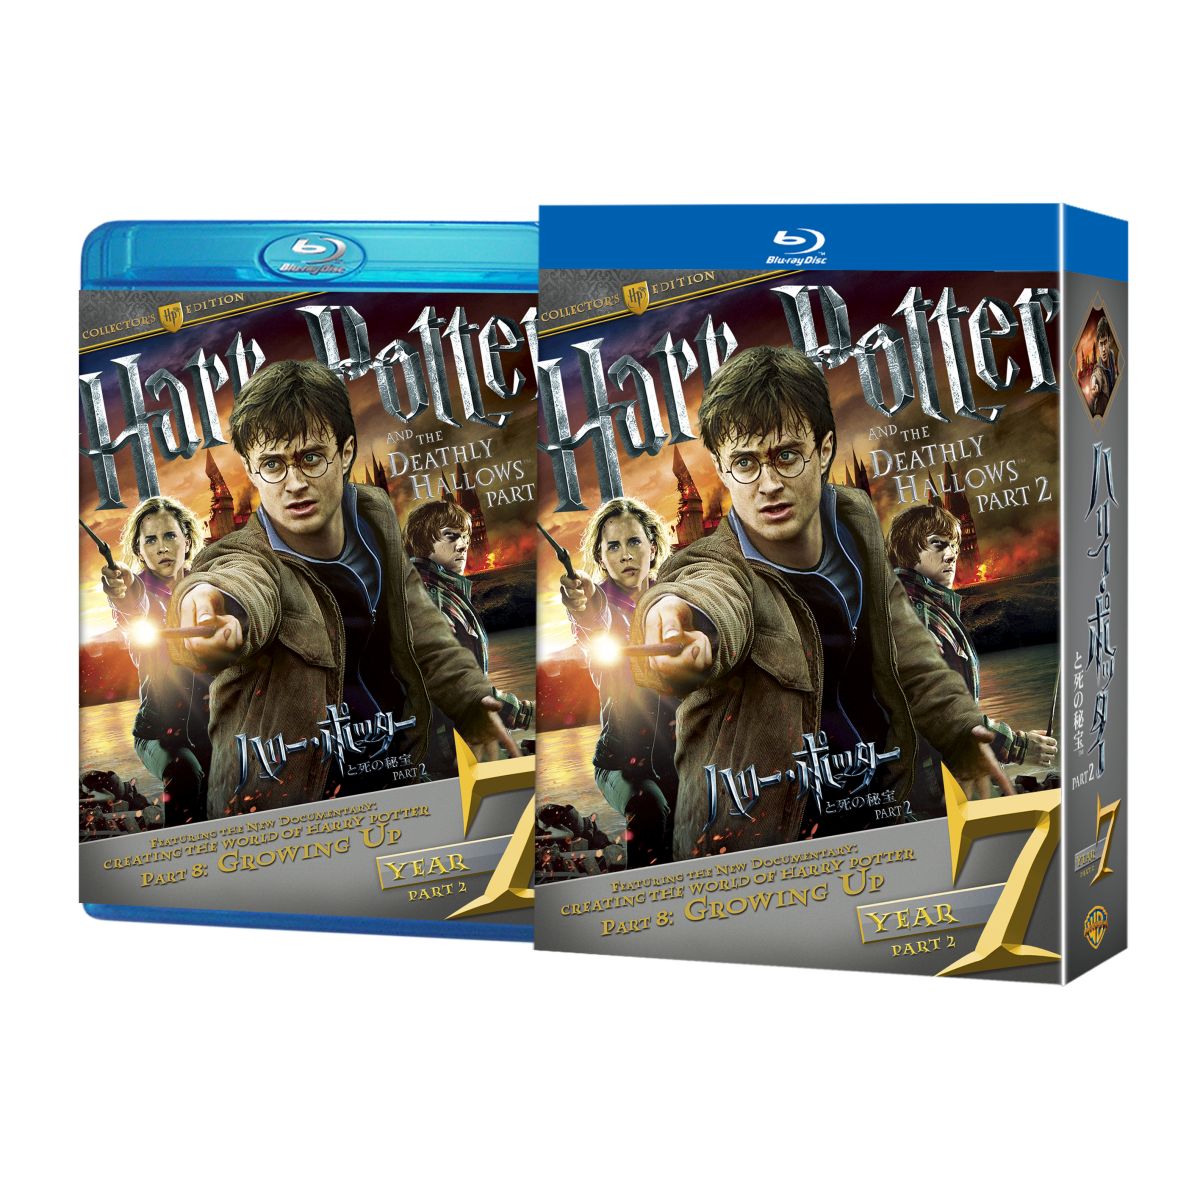 ハリー・ポッターと死の秘宝 PART2 コレクターズ・エディション（3枚組）【Blu-ray】画像